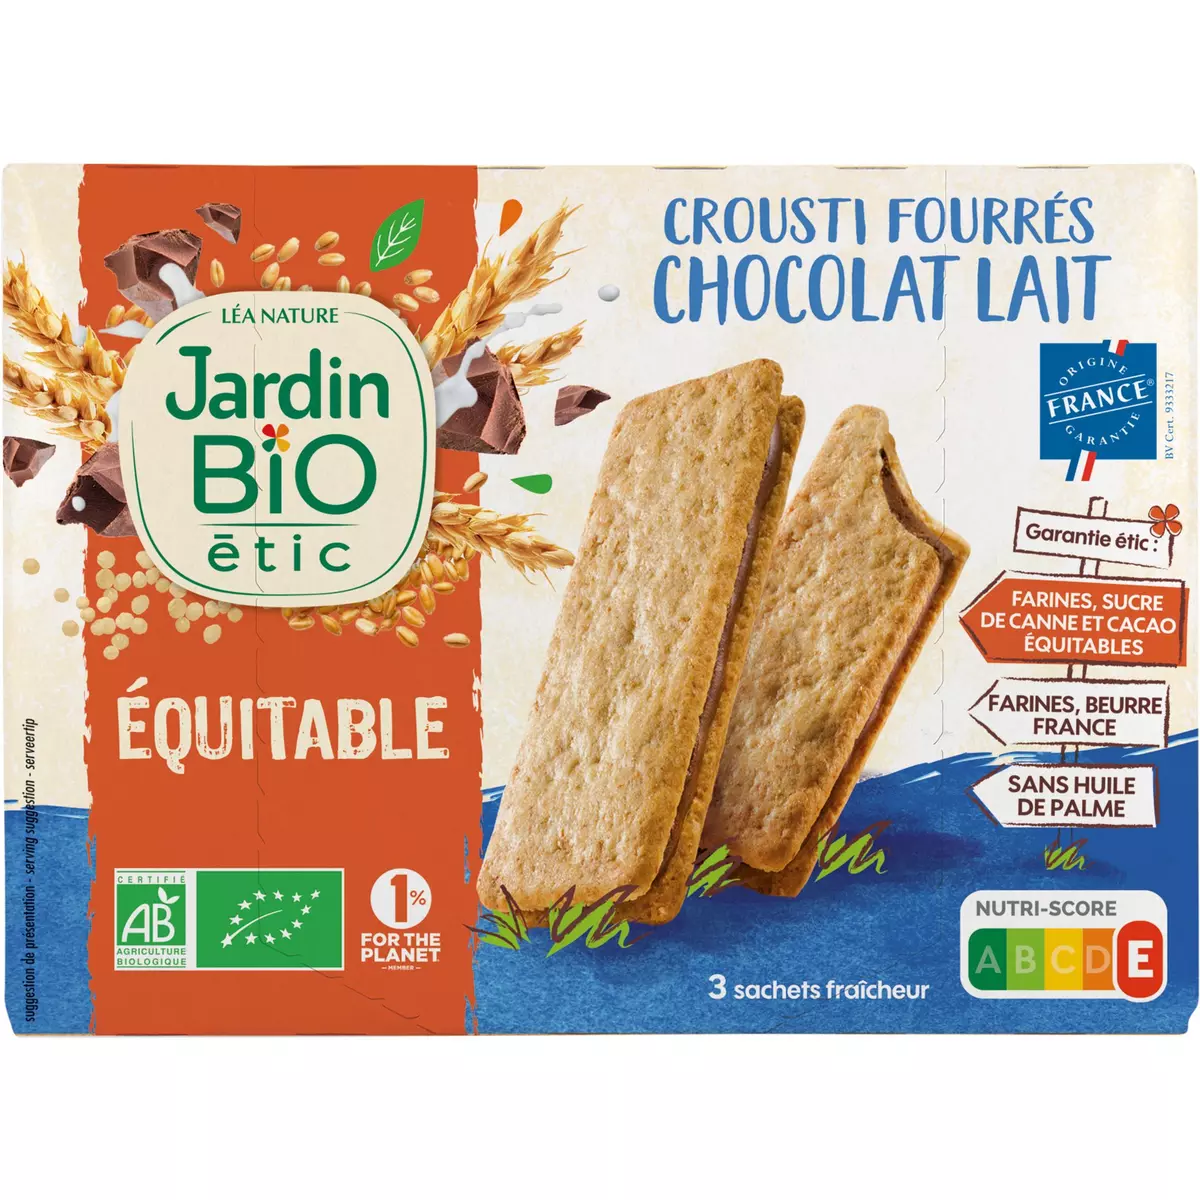 JARDIN BIO ETIC Crousti fourrés chocolat au lait 170g